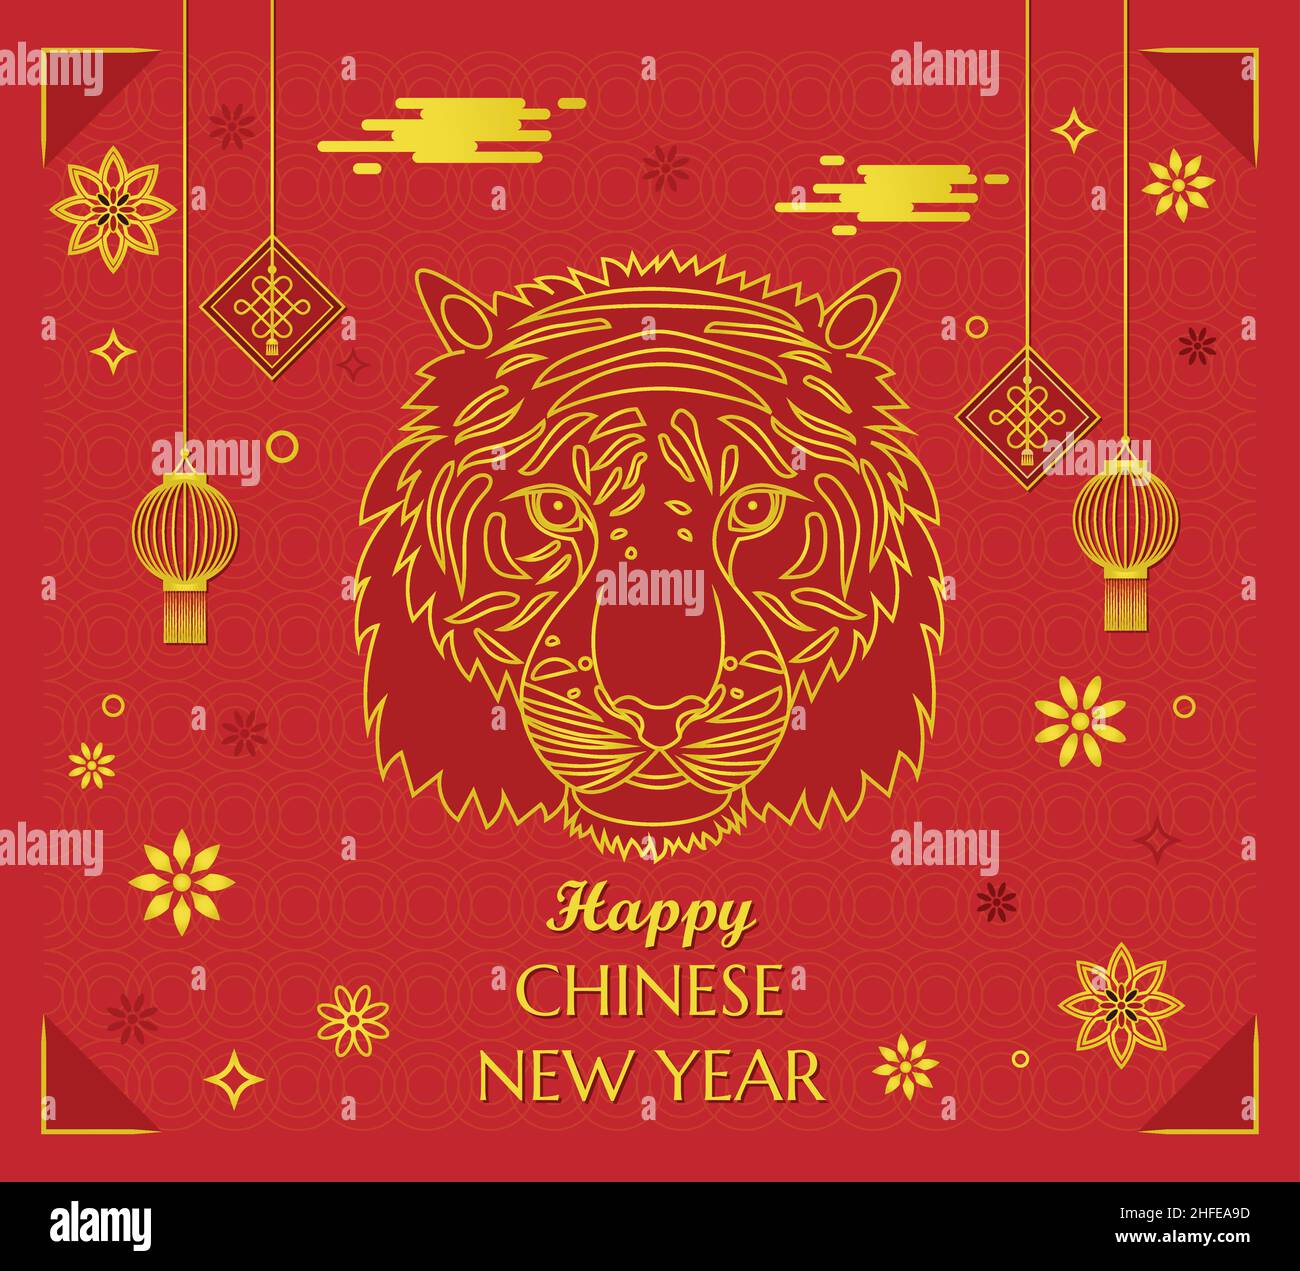 Happy Chinese New Year Tiger Poster papier peint traditionnel chinois doré rouge cadre accueil avec lanternes et nuages Illustration de Vecteur